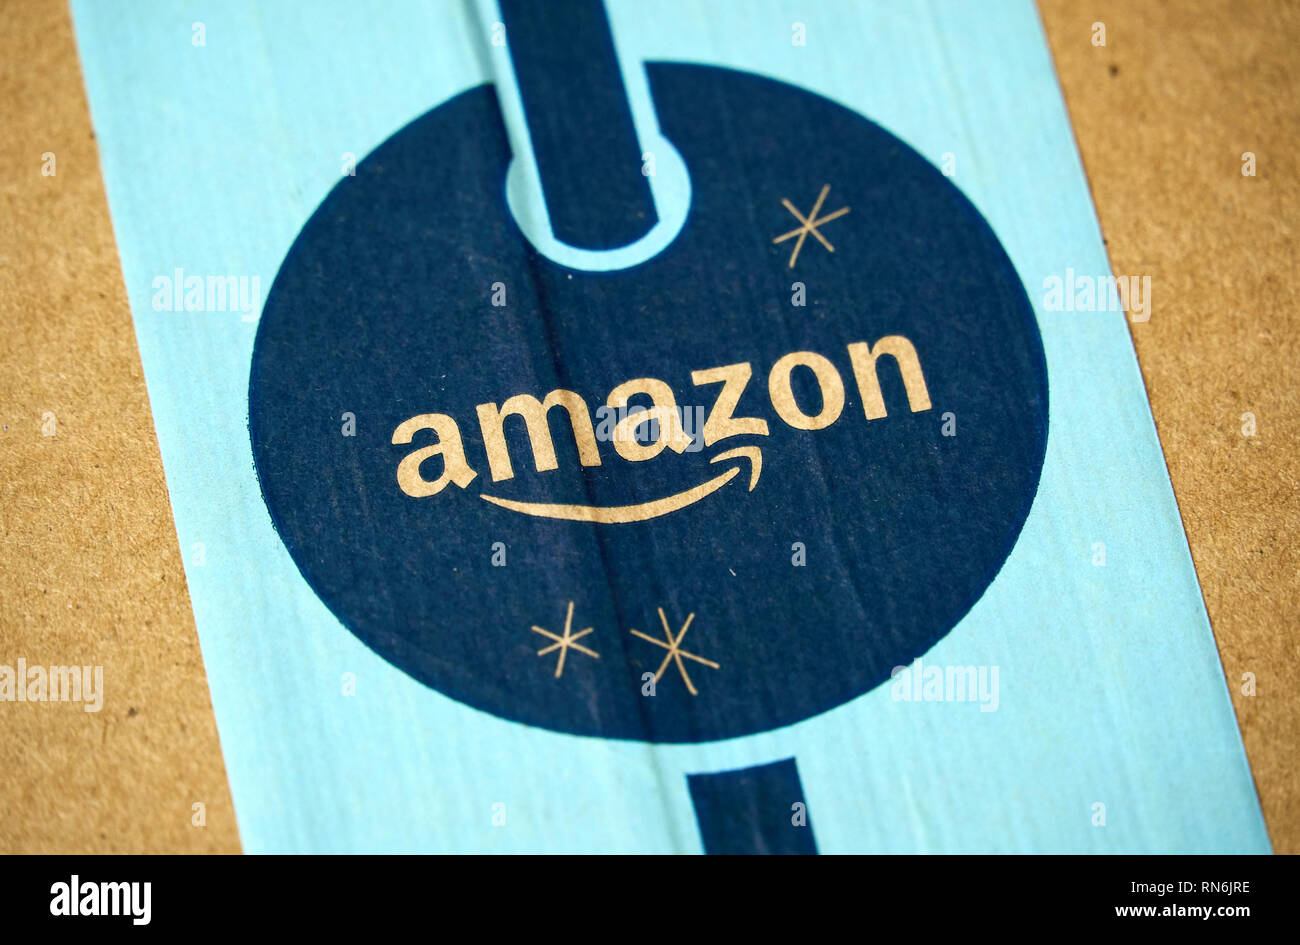 MONTREAL, Canada - 1 gennaio 2019: la perfezione del Amazon pacchetto vacanza con il logo. Amazon, è un americano di tecnologia azienda concentrandosi sul commercio elettronico e i servizi cloud Foto Stock